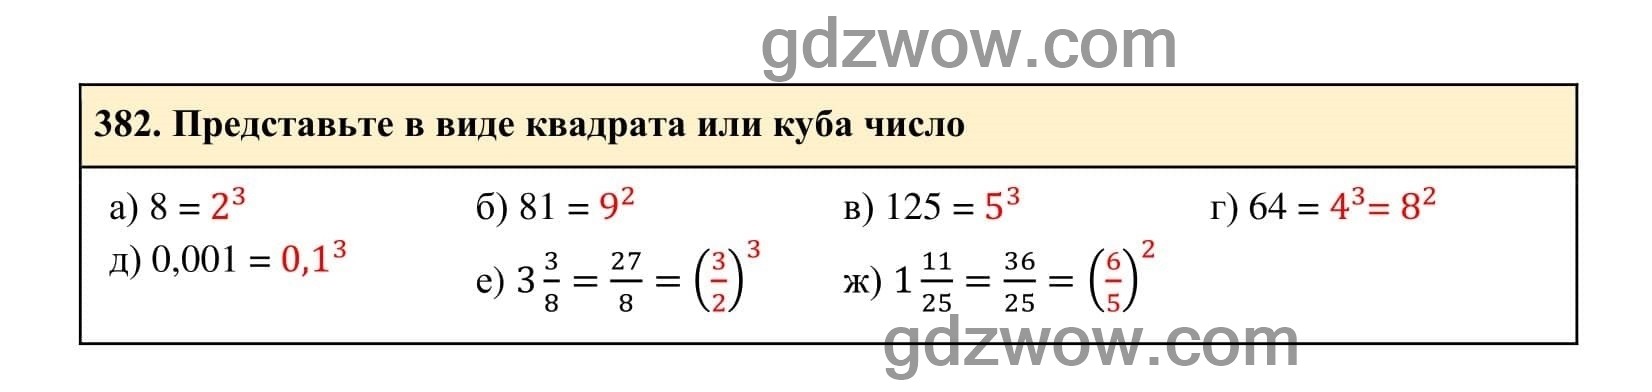 Упражнение 382 - ГДЗ по Алгебре 7 класс Учебник Макарычев (решебник) - GDZwow